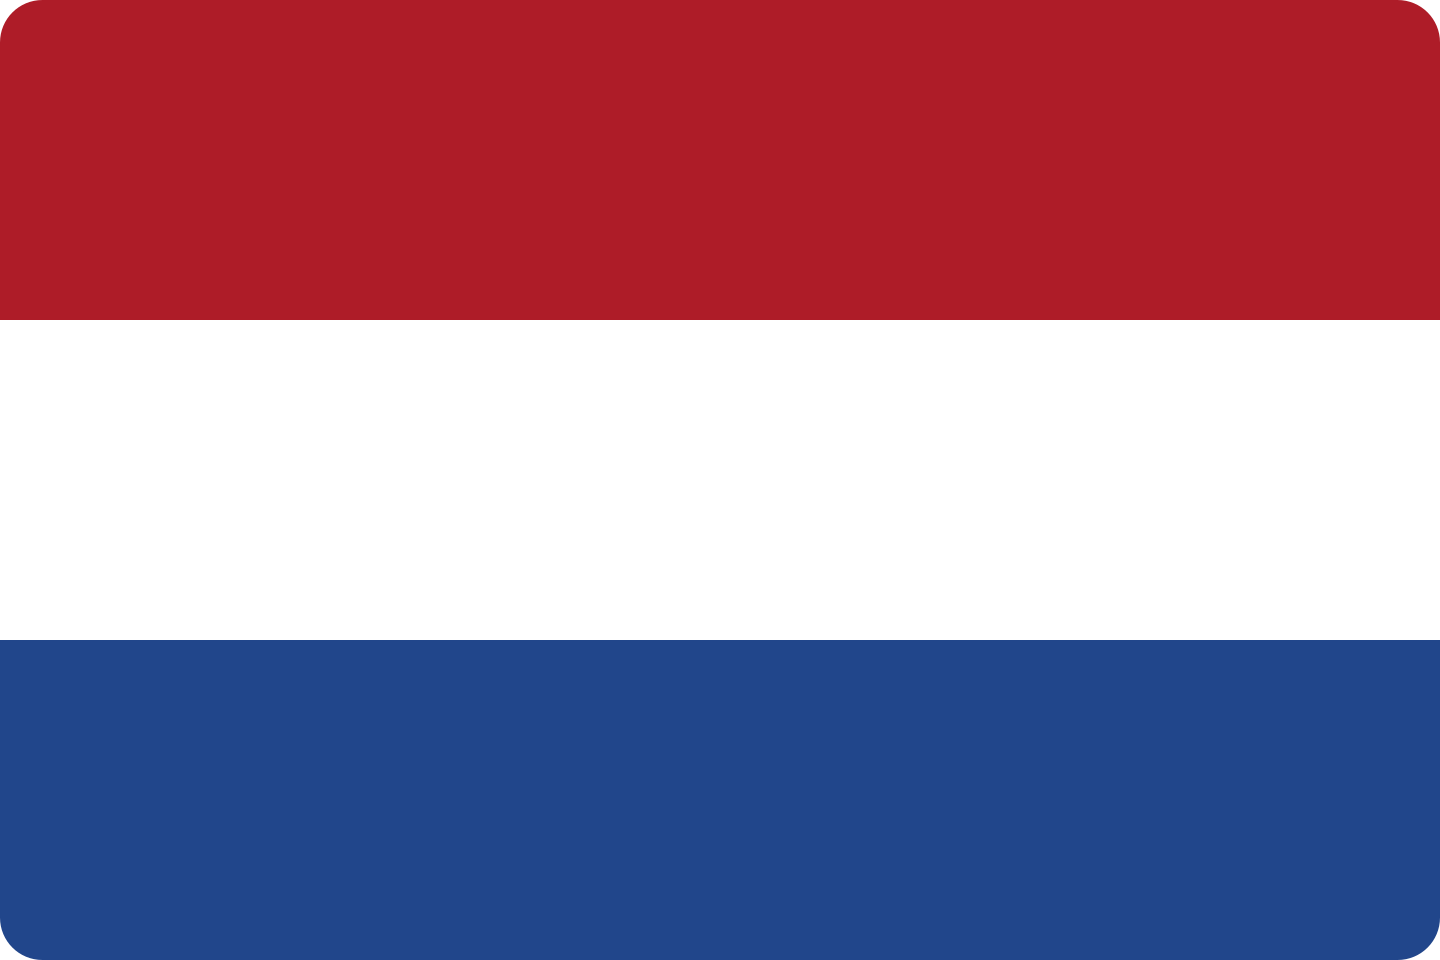 bandeira paises baixos netherlands flag 1 - Flag of the Netherlands